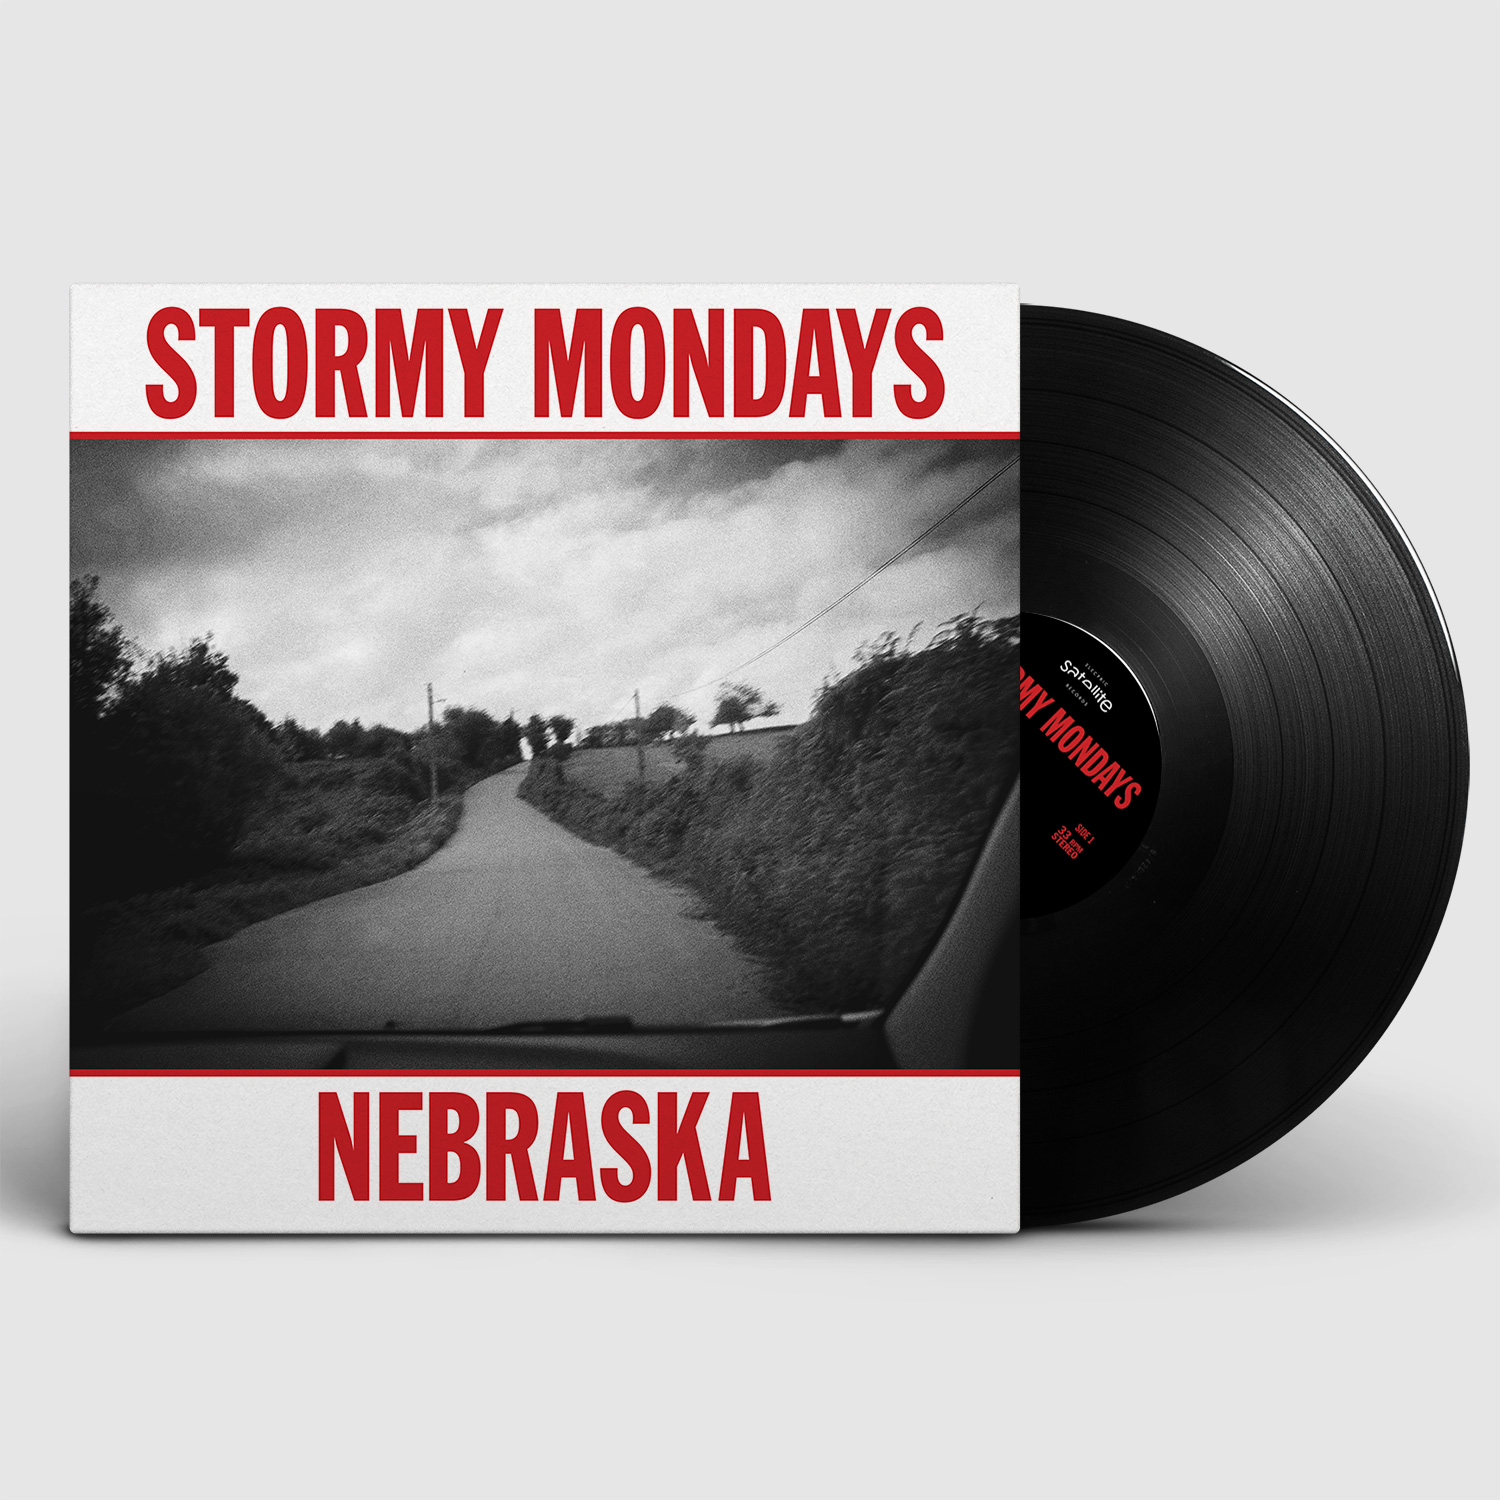 Nebraska (vinilo) - Stormy Mondays